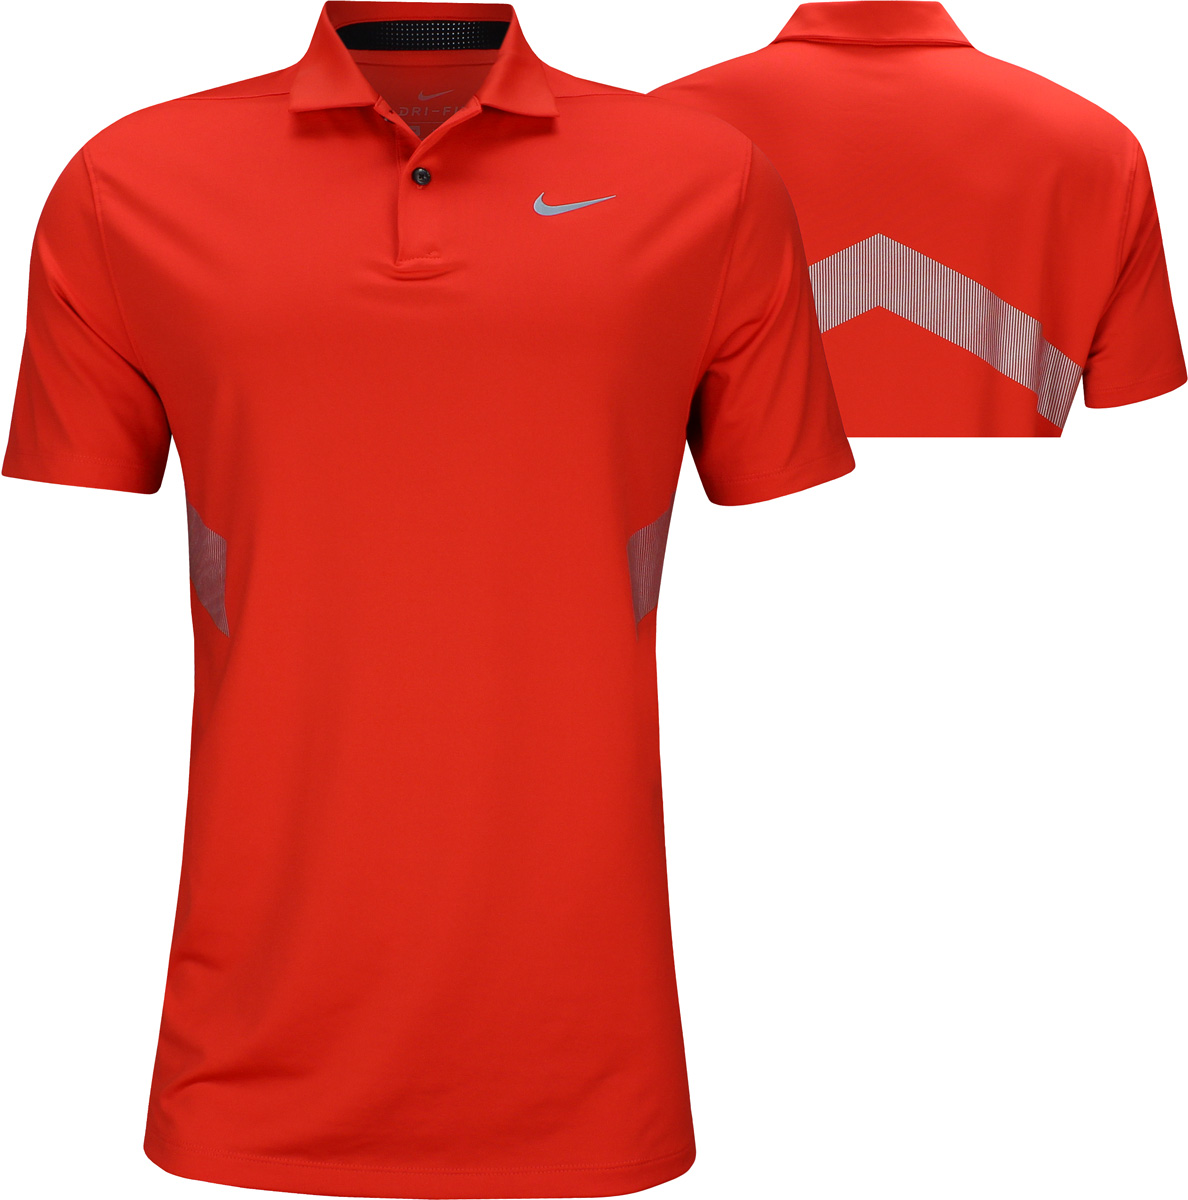 2019 nike golf apparel